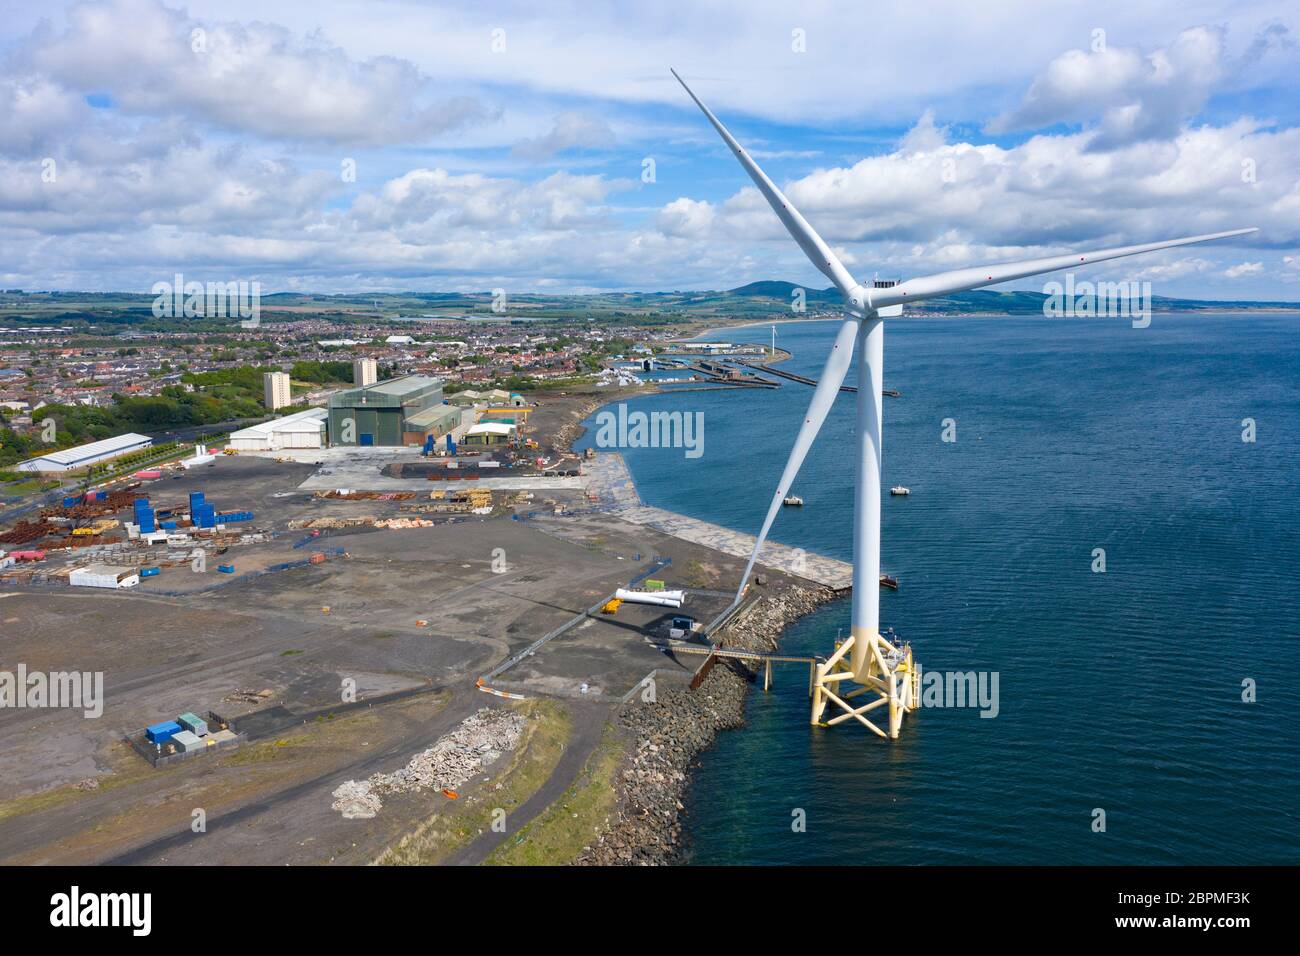 Vista aerea del cantiere Burntisland Fabrications Ltd (BiFab) di Metil a Fife, Scozia, Regno Unito Foto Stock